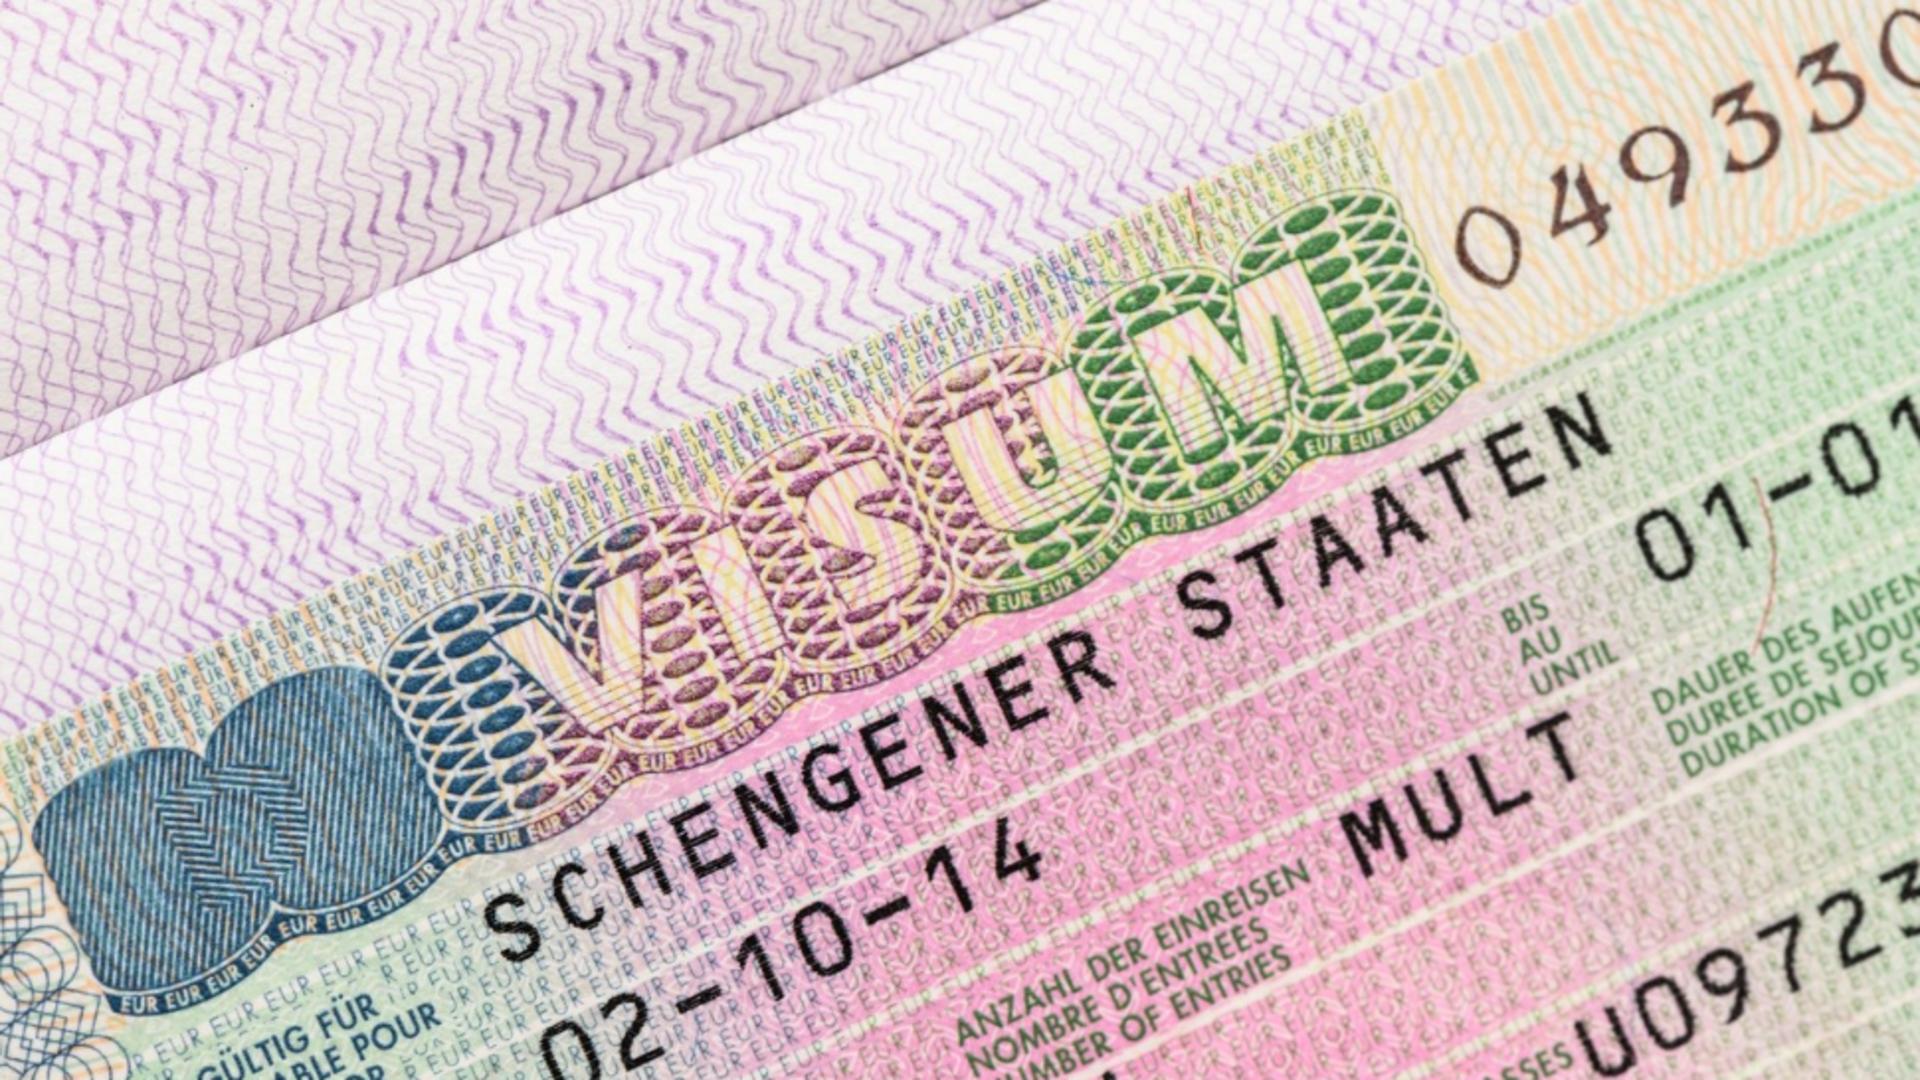 Austriecii se plâng că România blochează participarea Austriei la reuniuni NATO, ca replică la veto-ul în problema Schengen. Foto: Profimedia